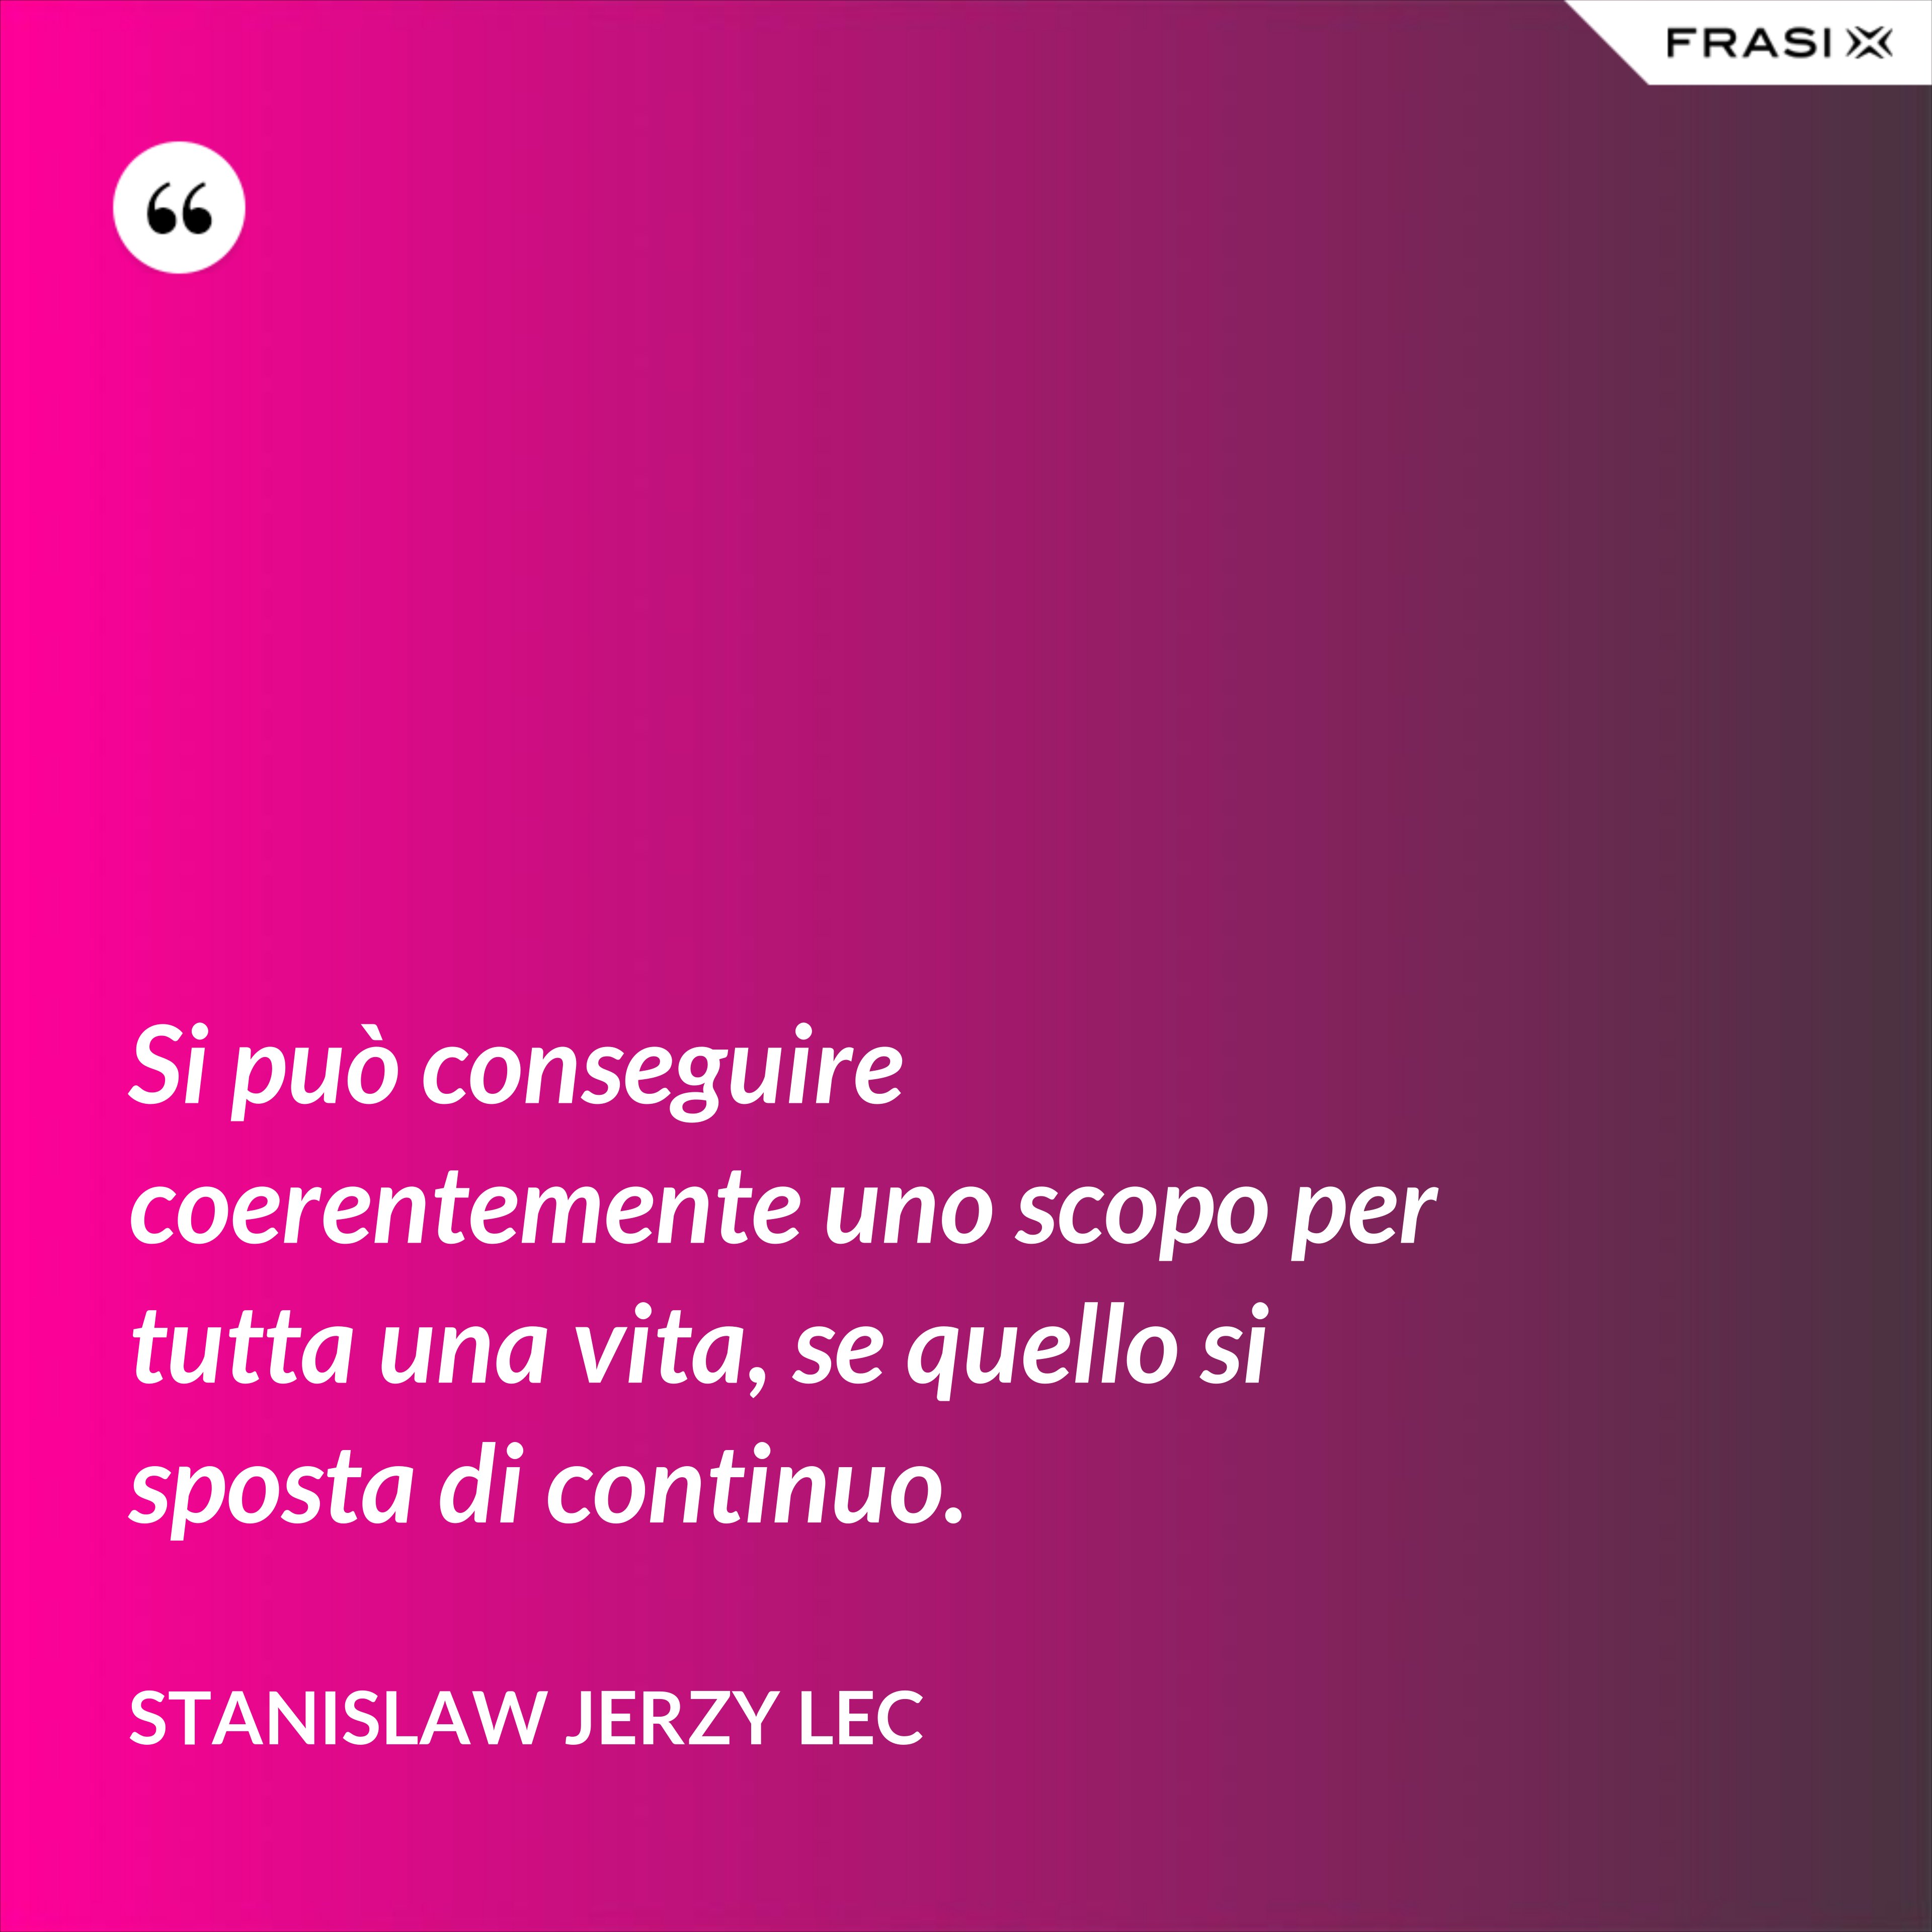 Si può conseguire coerentemente uno scopo per tutta una vita, se quello si sposta di continuo. - Stanislaw Jerzy Lec